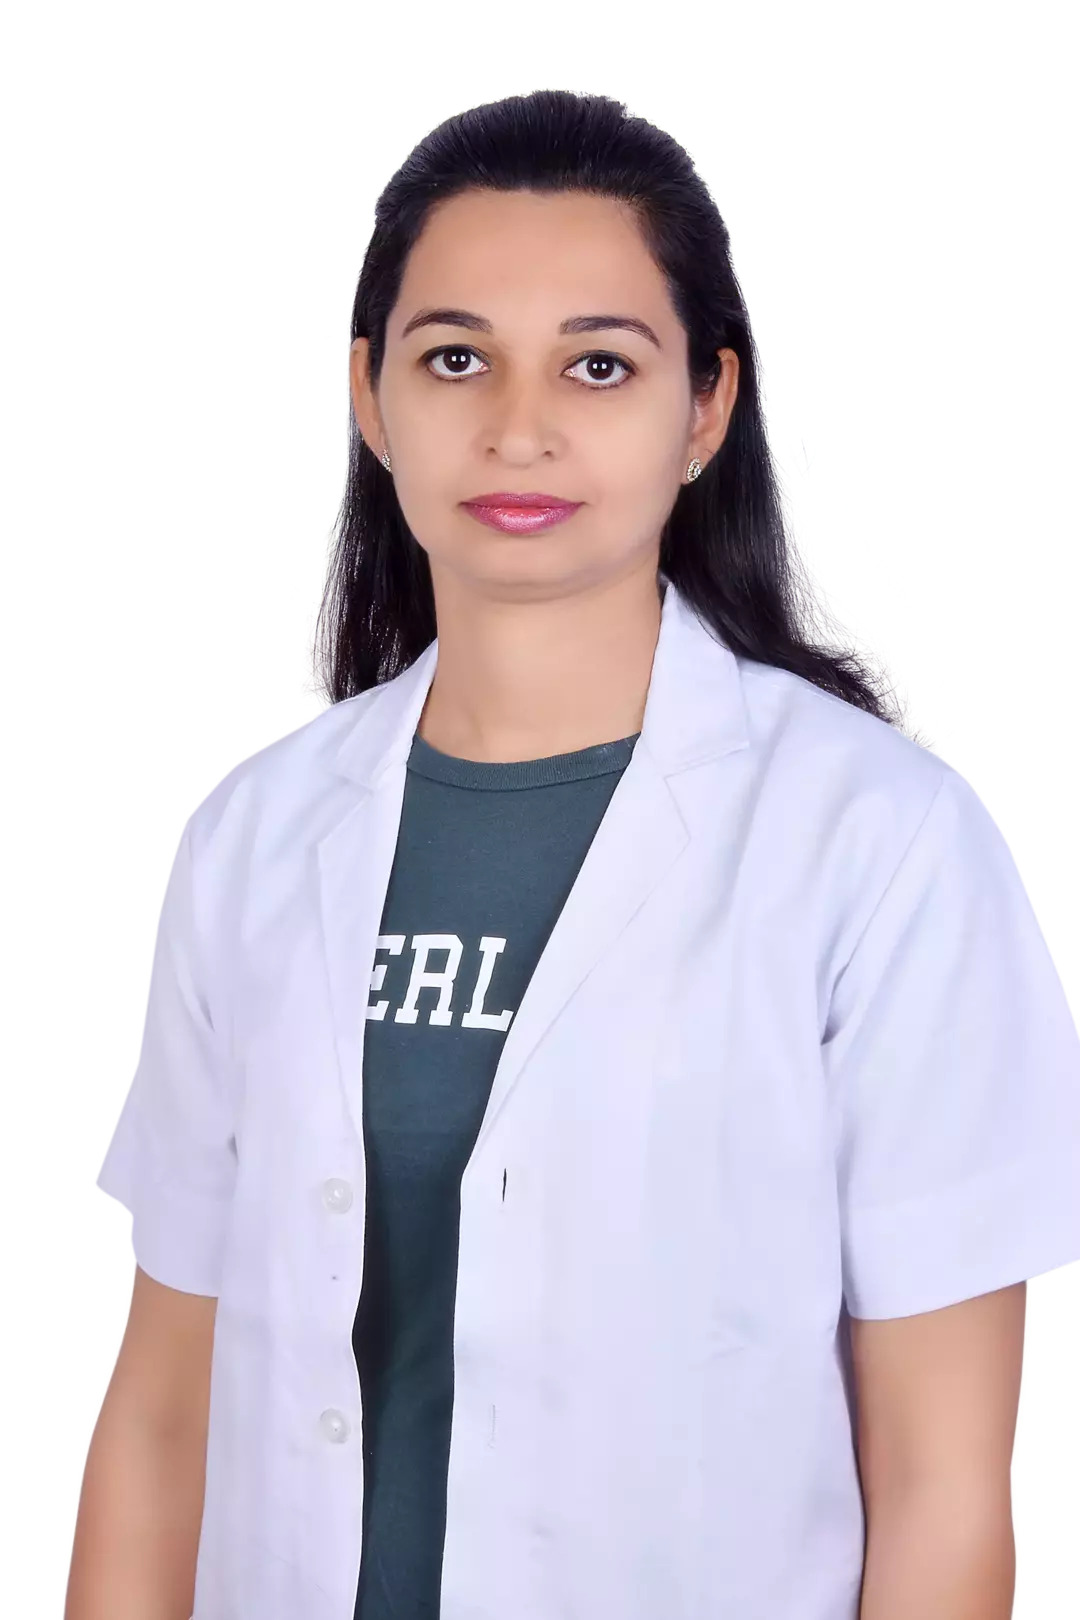 Dr. Renu  chaudhary from 33, Shiv Shakti Nagar, Brijlalpura, Jaipur, Rajasthan 302019, gautam marg, nirman nagar ,Jaipur, Rajasthan, 302019, India 12 years experience in Speciality Dentist | Kayawell